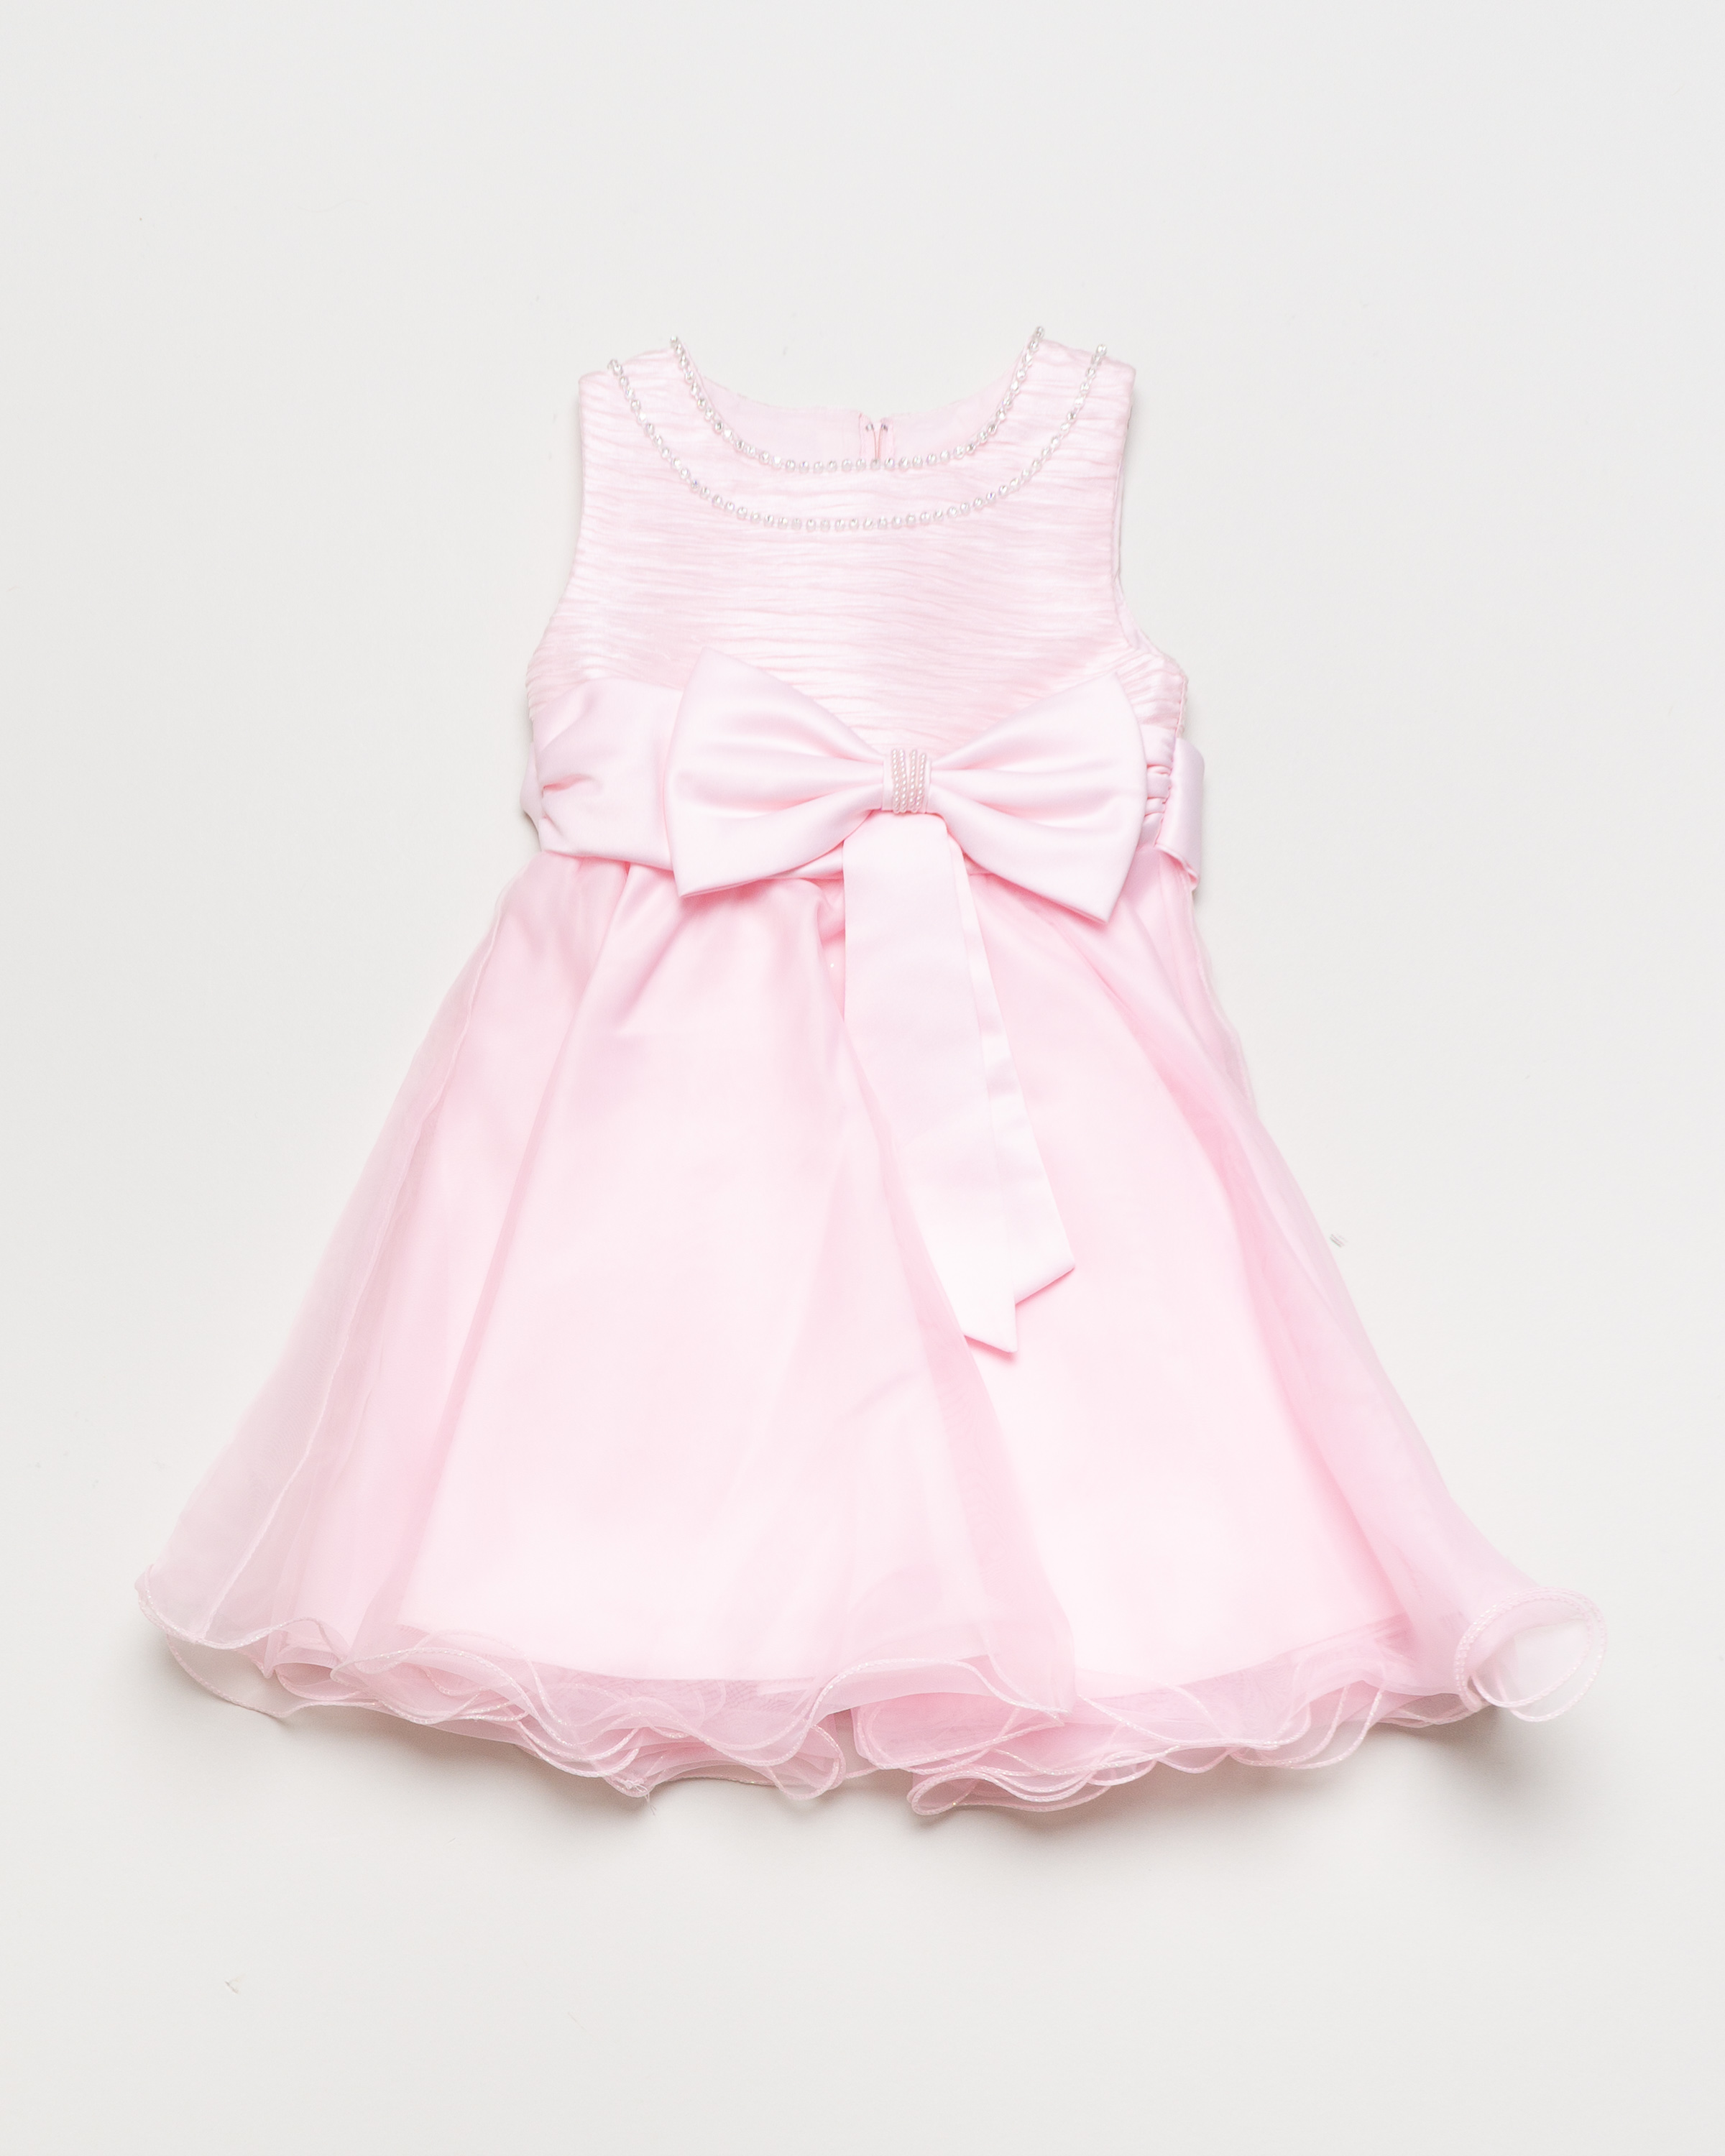 1 Kleid Gr. 110-122 – rosa Schleife Tüll Perlen Satin Festlich